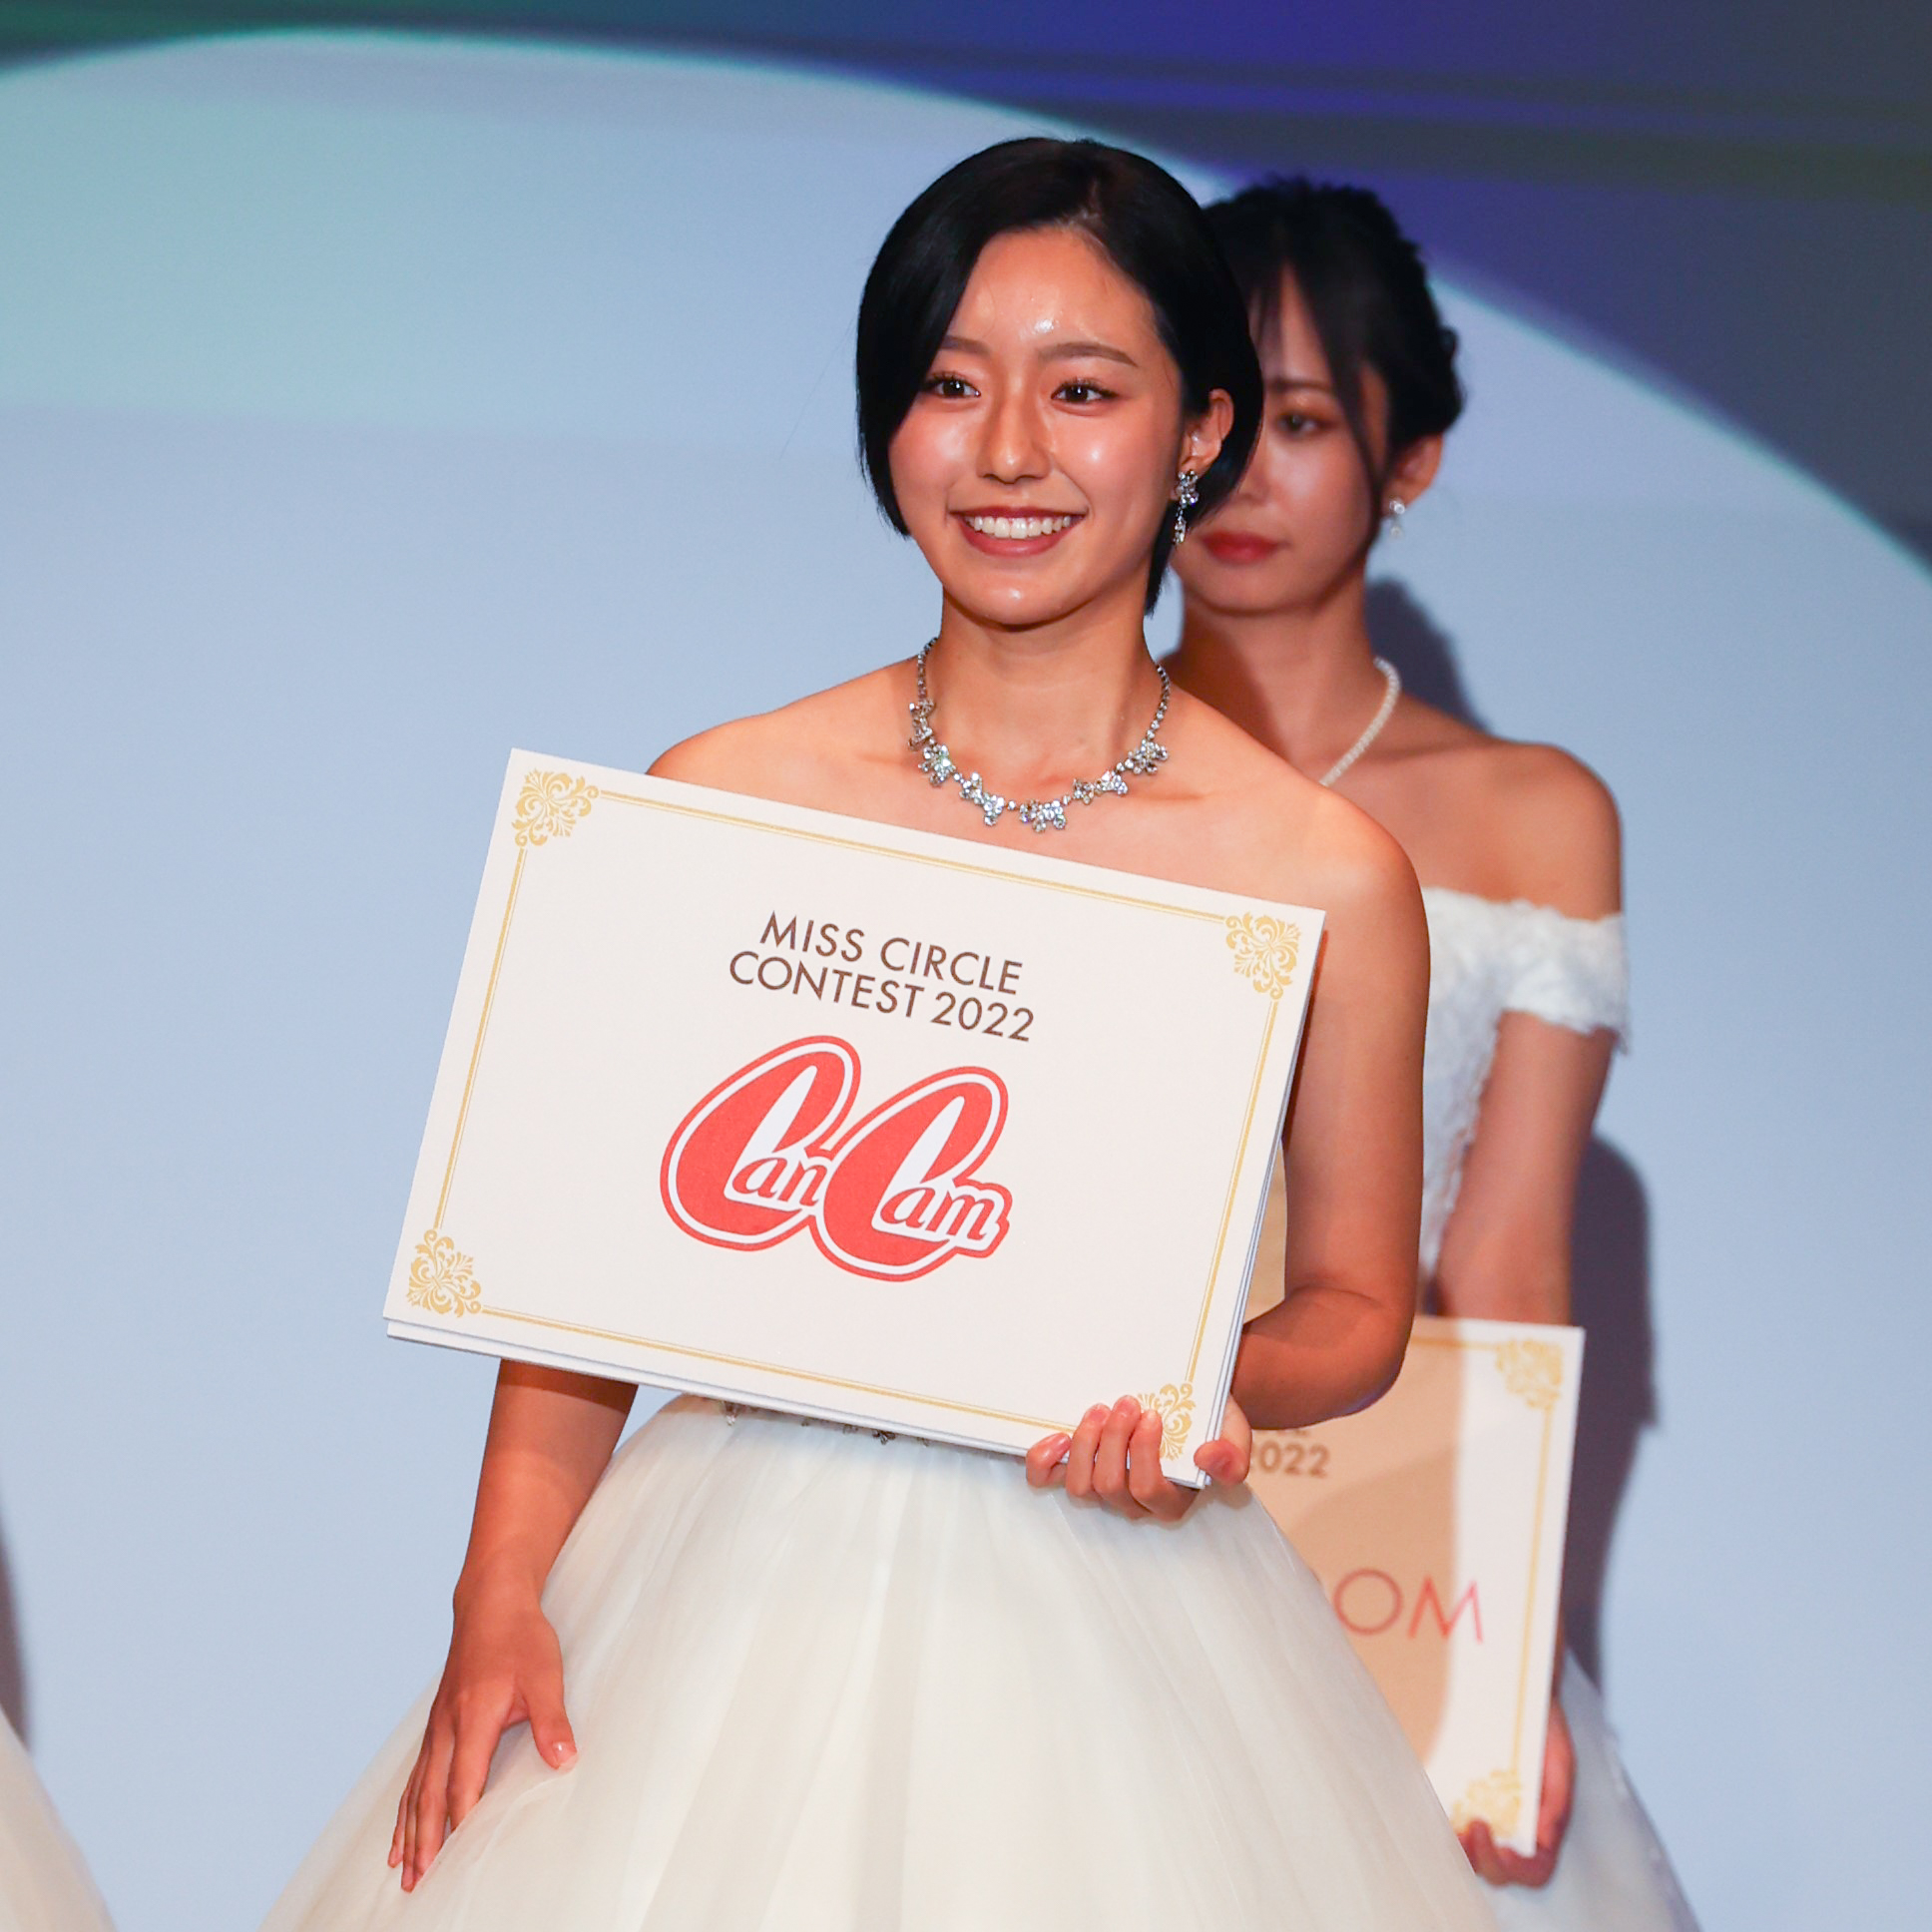 井手 美希(いでみき) 国立音楽大学3年・20歳 ミスサークル グランプリ 2022